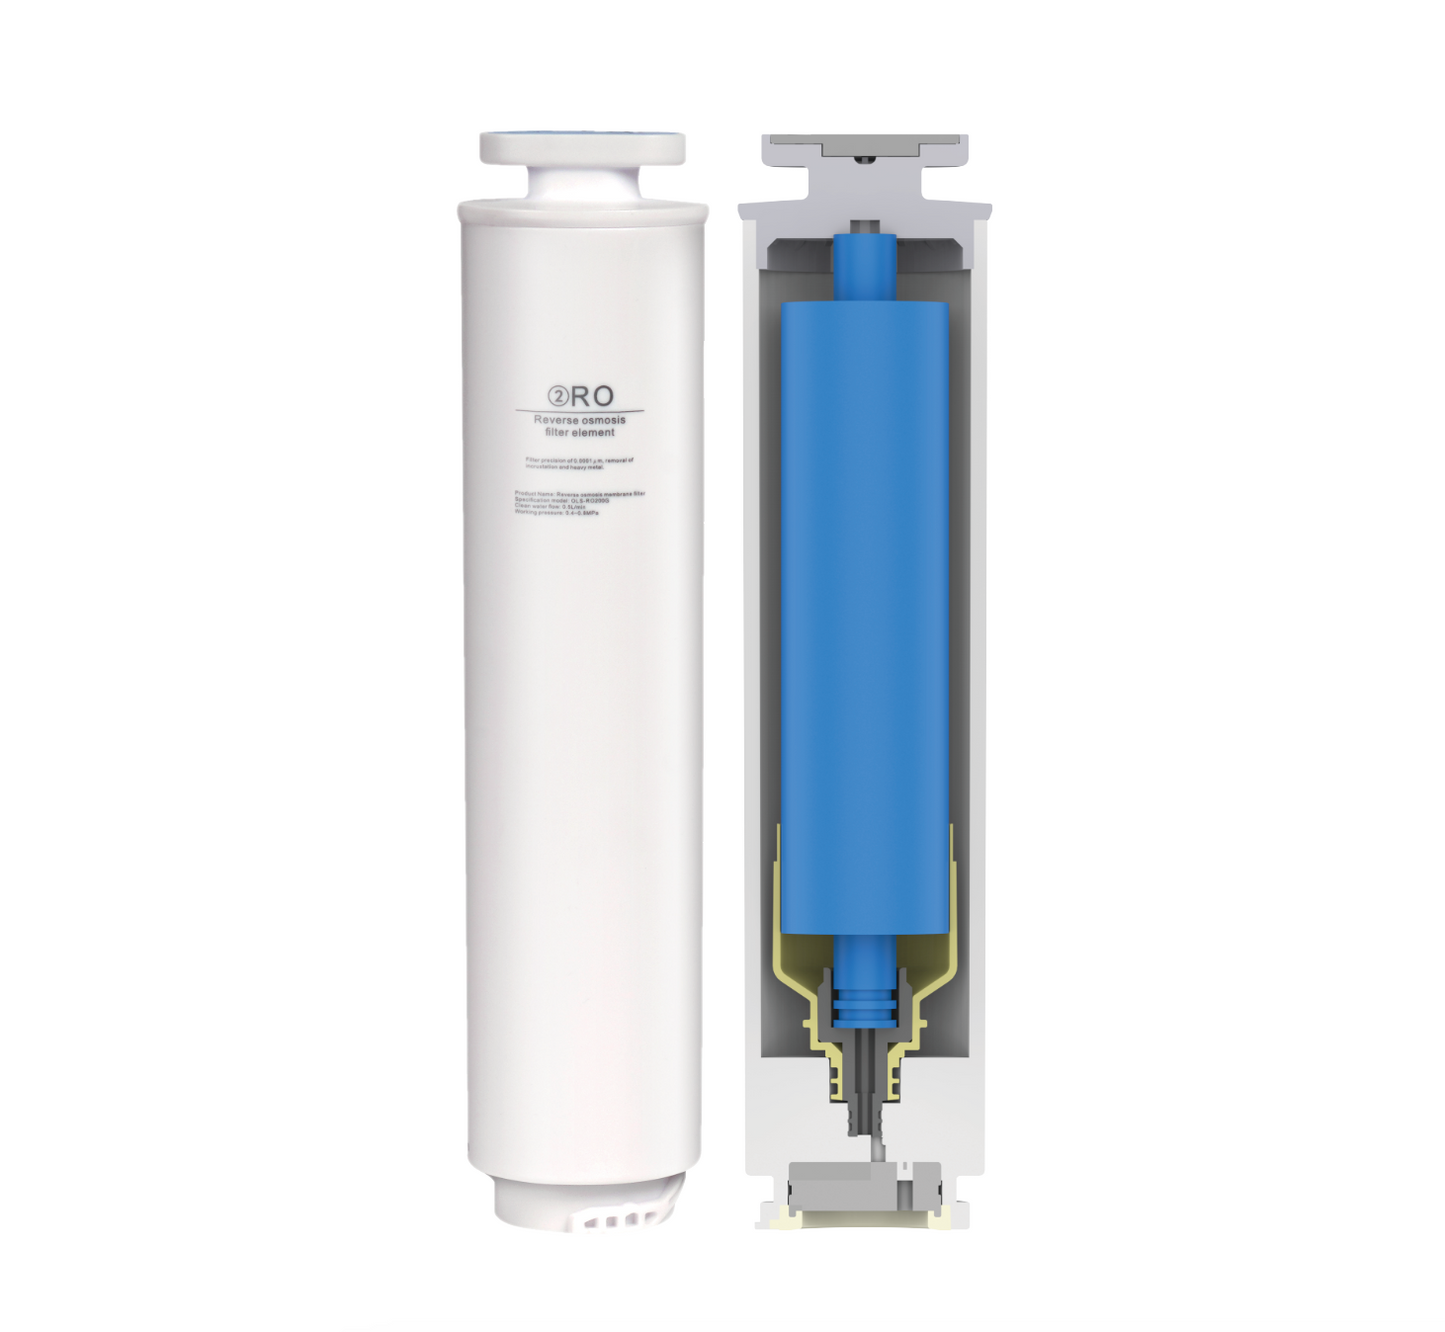 DM Home RO Filter (For RO Water Dispenser)